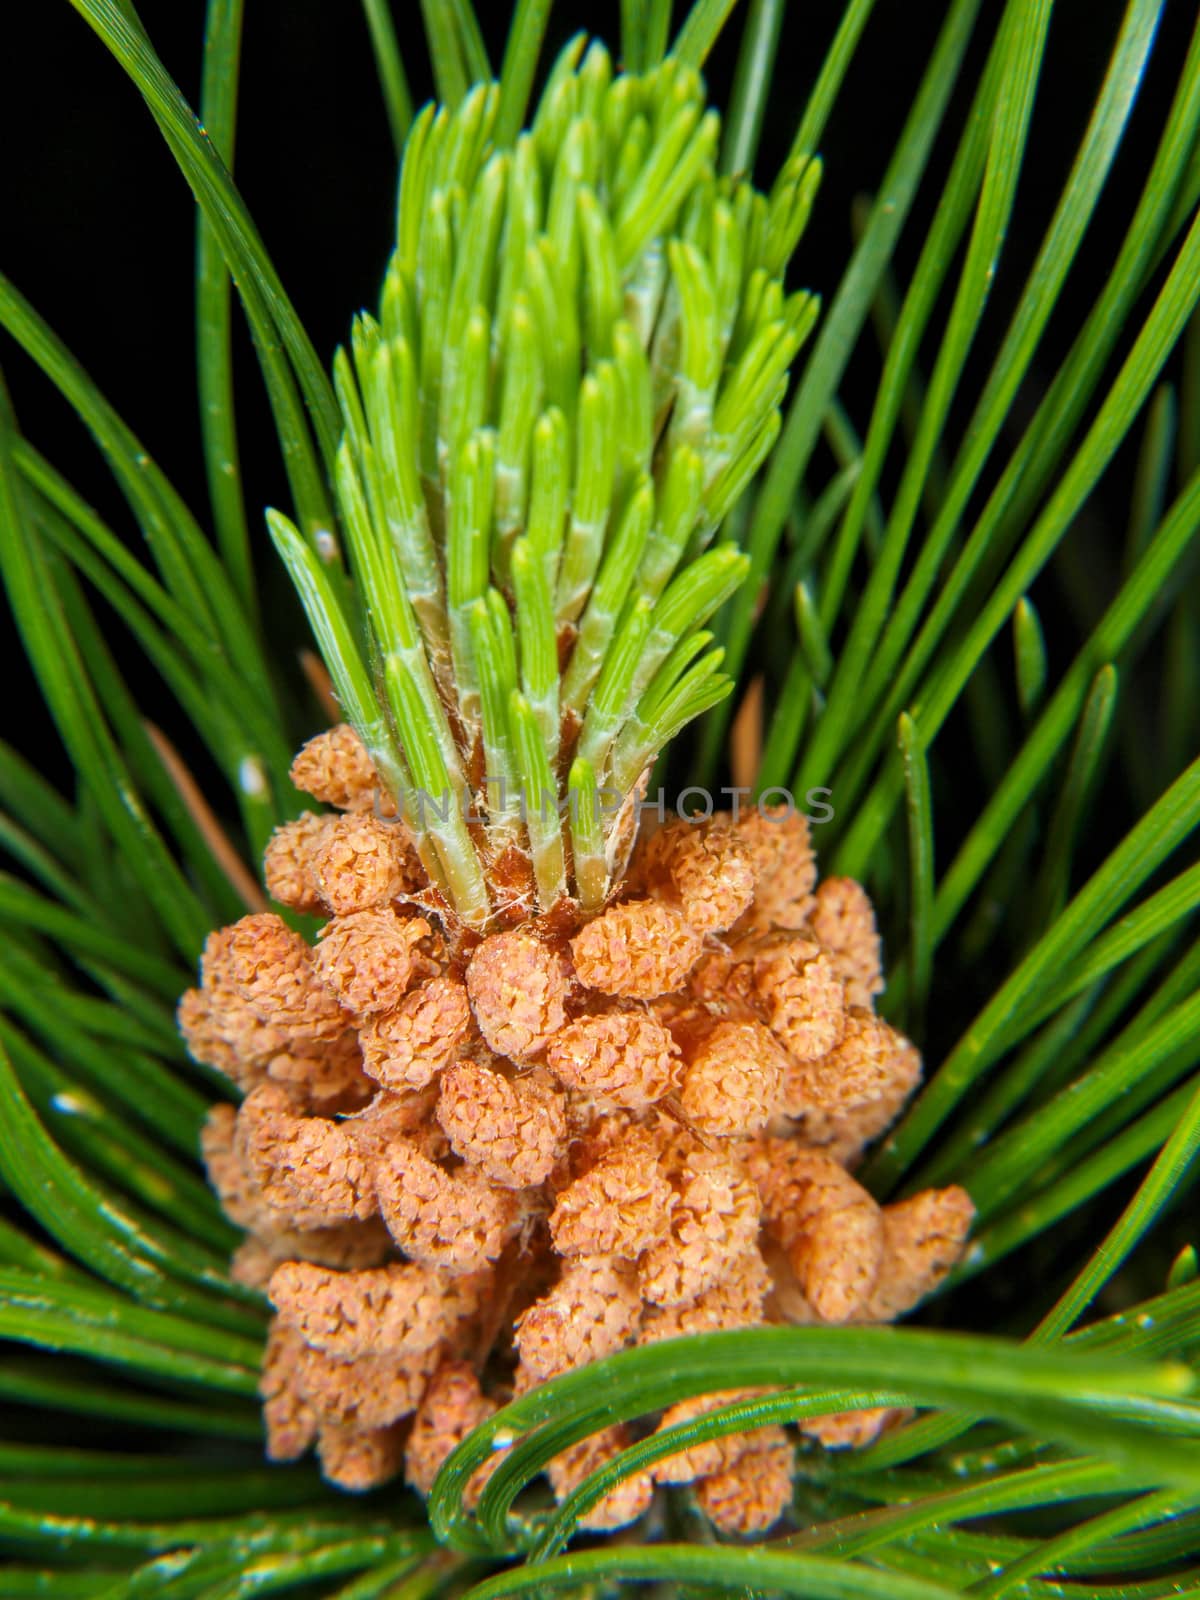 Blooming pine tree by Arvebettum